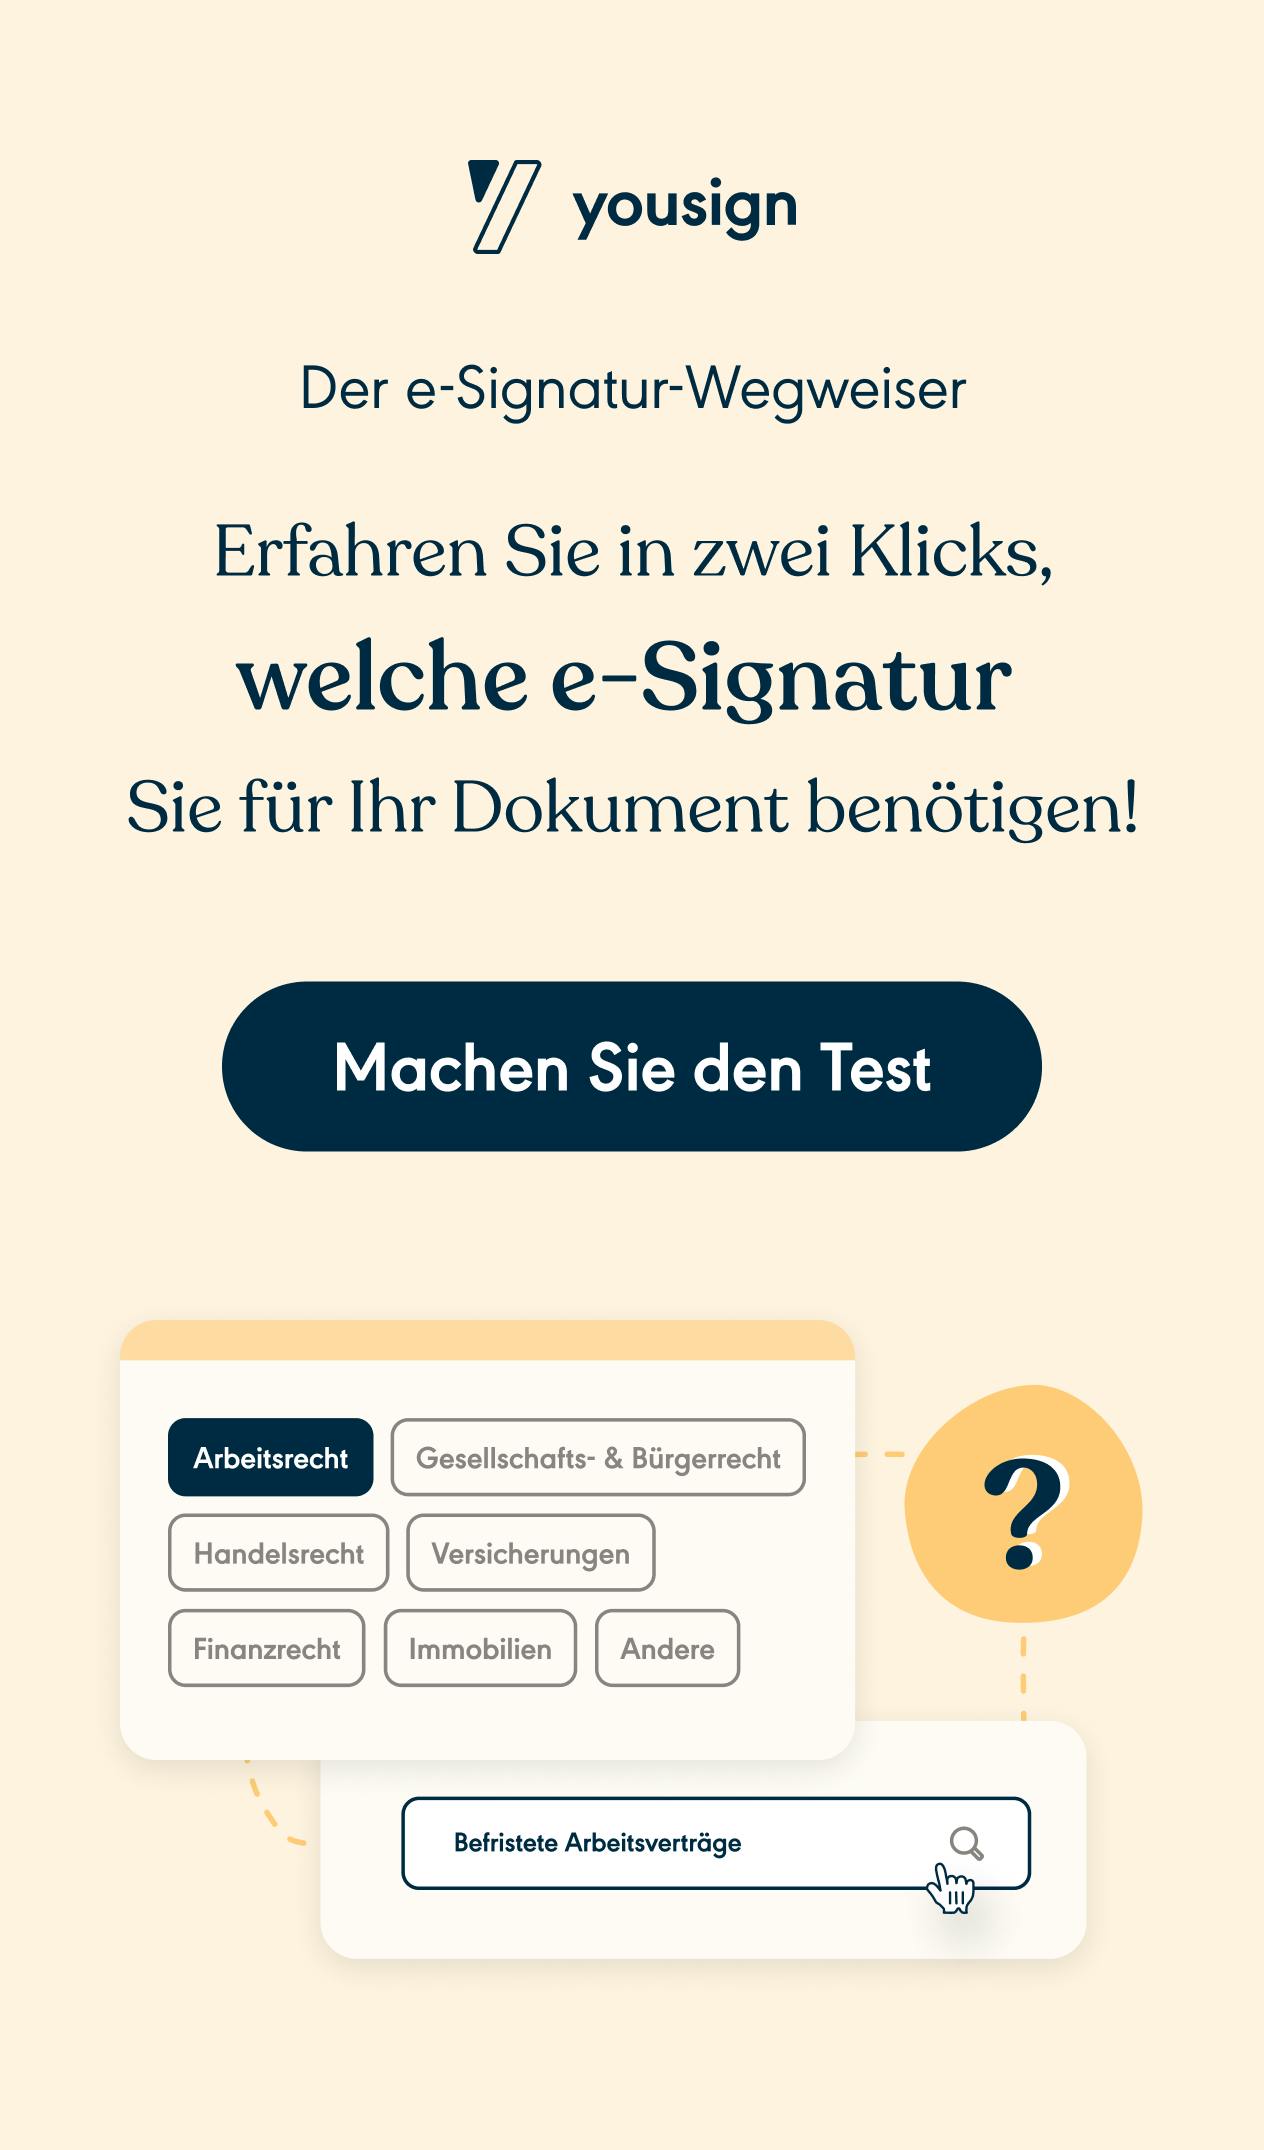 e-Signatur Wegweiser